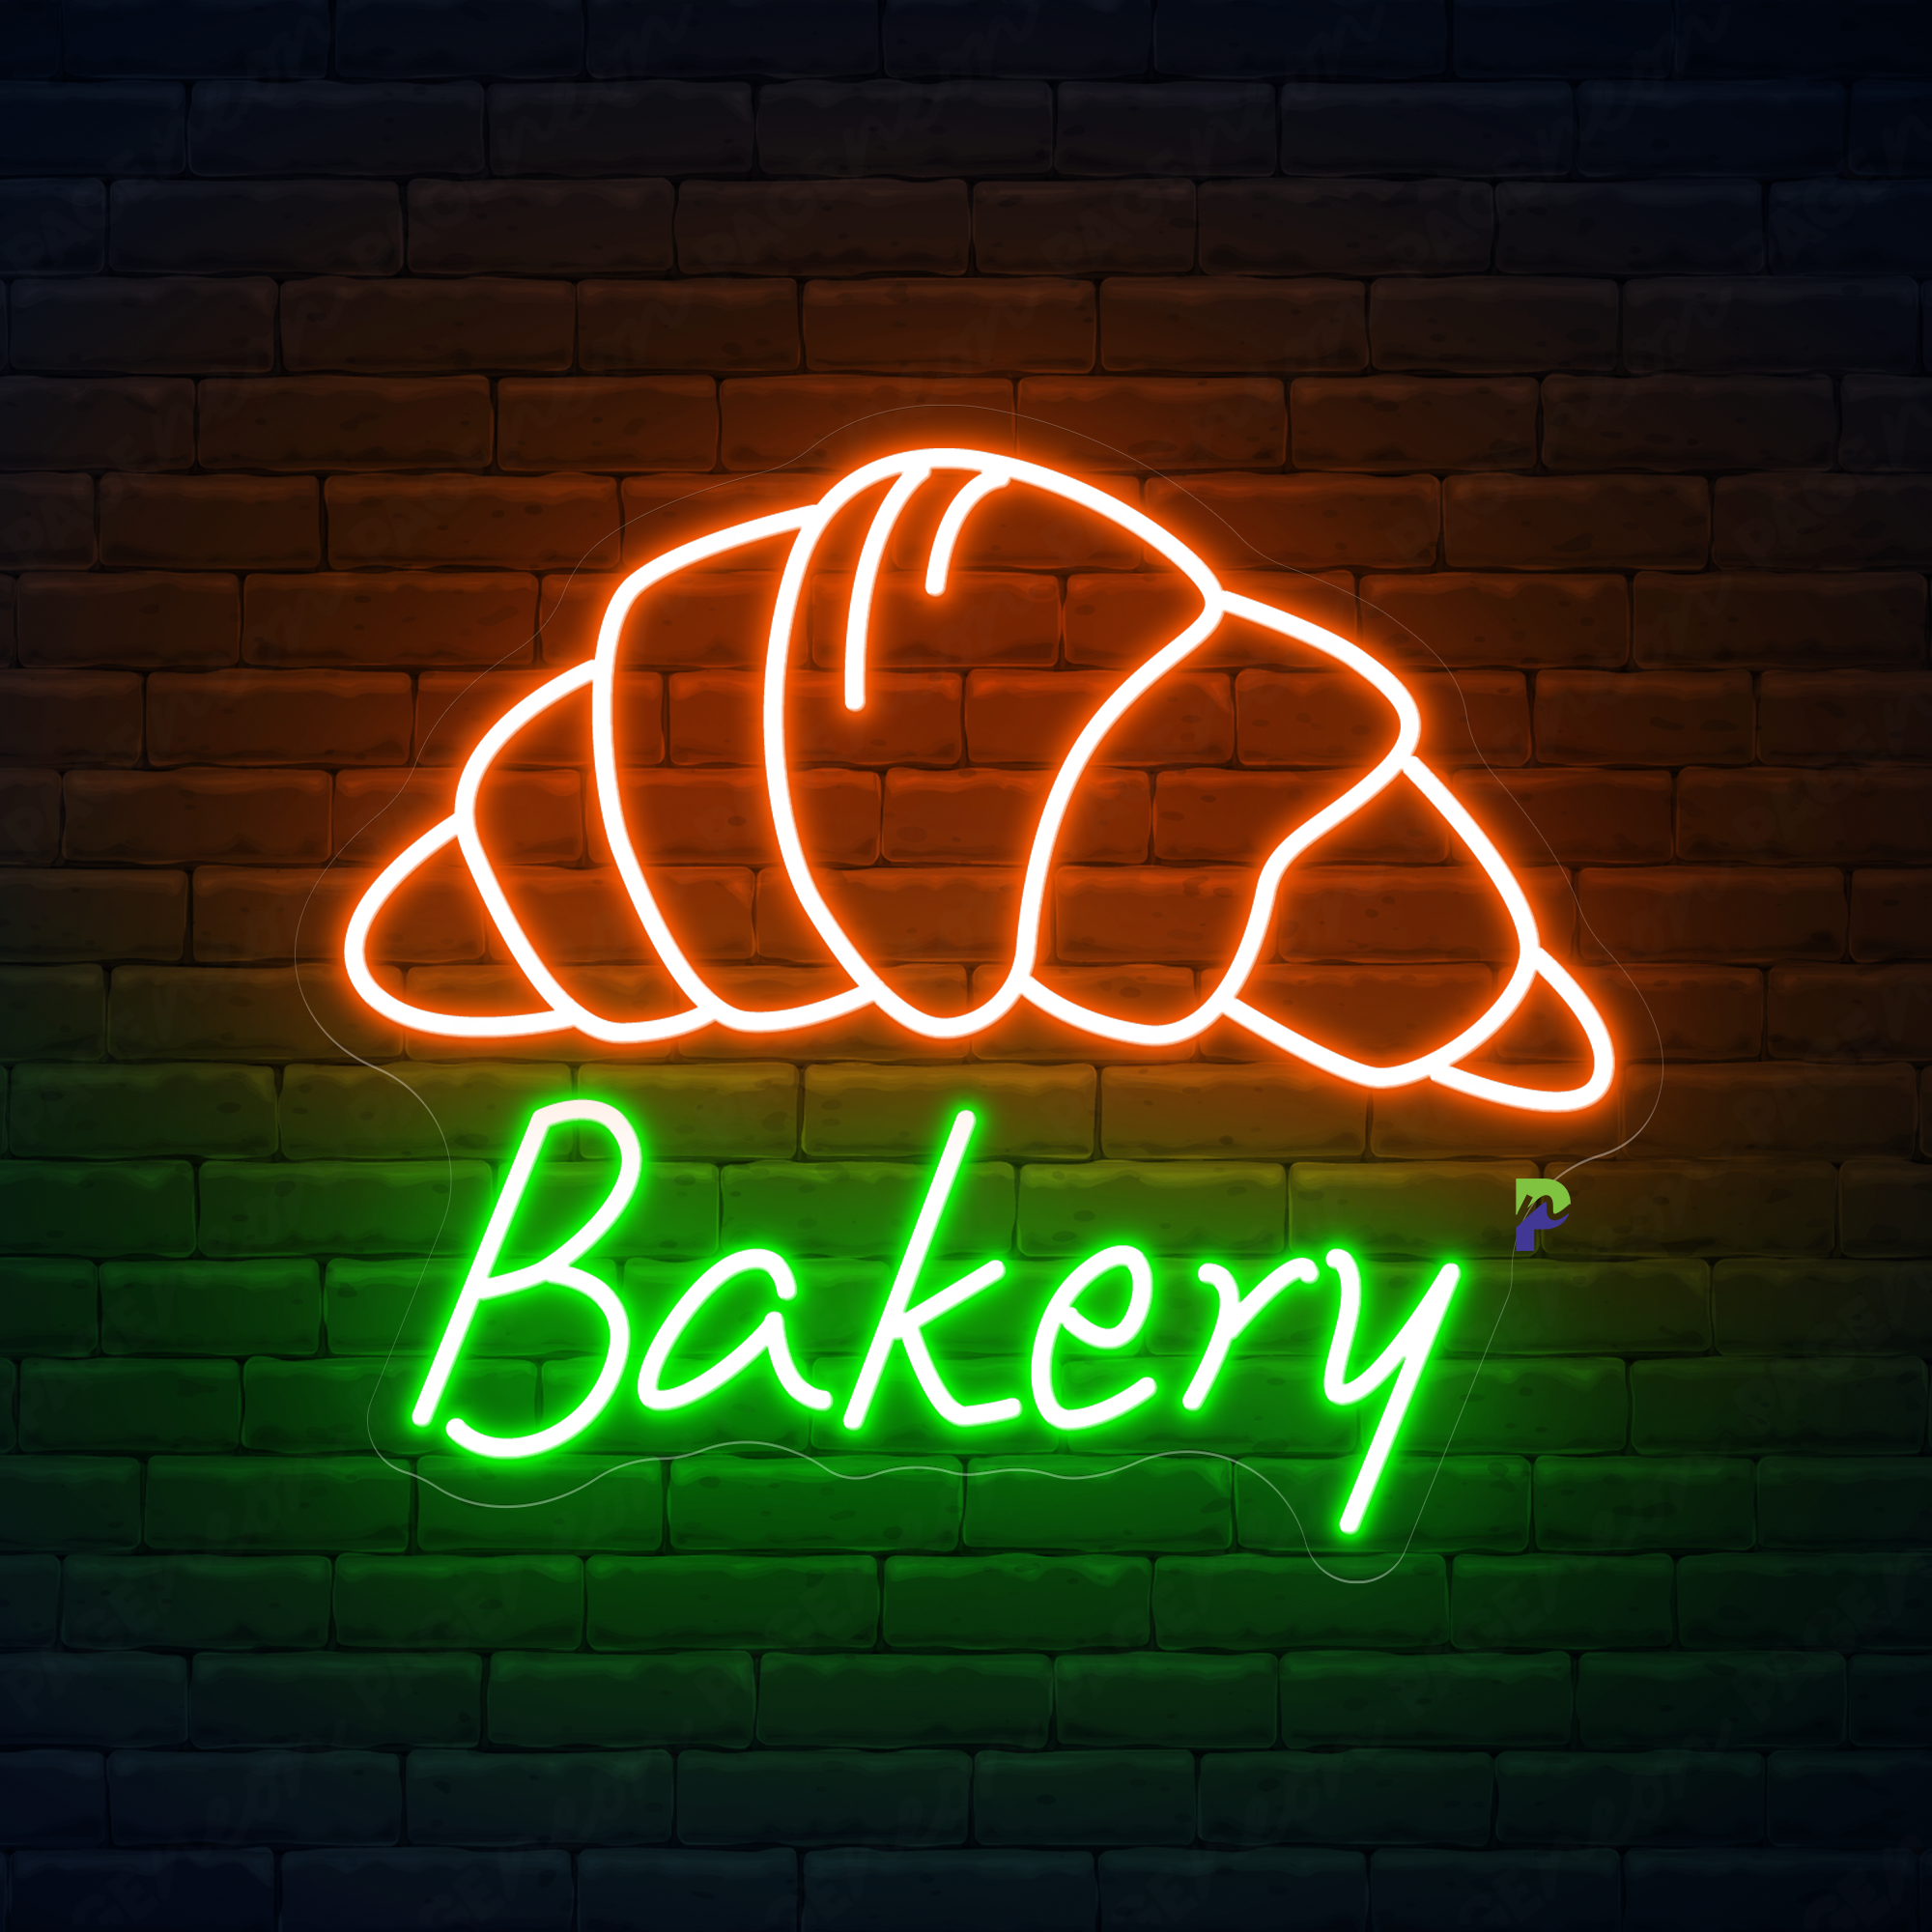 Bakery Neon Sign Led Light For Business